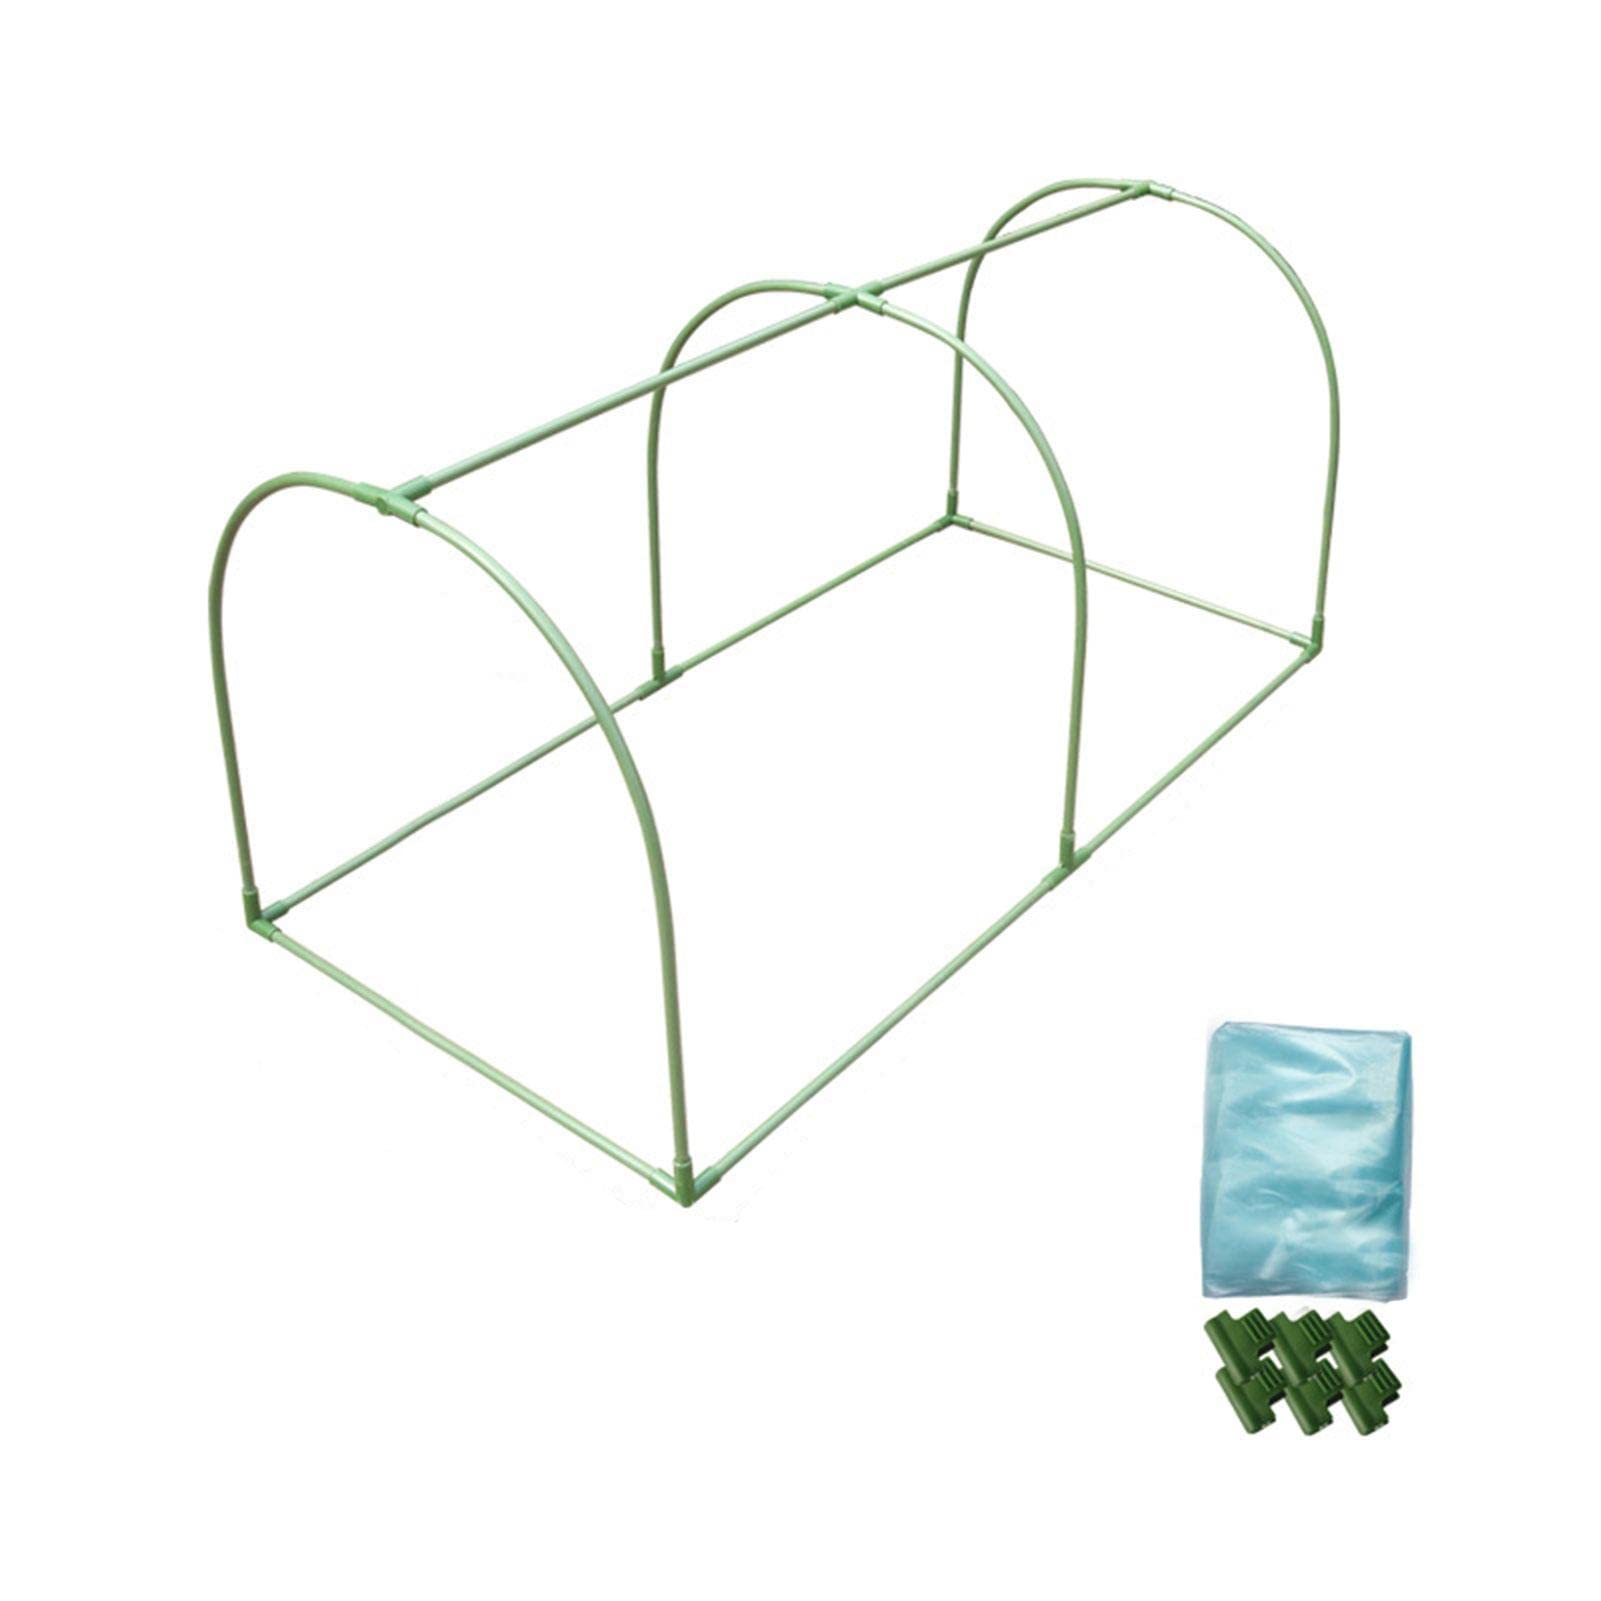 ORTUH Pflanzen-Abdecknetz-Kit,Pflanzenabdeckung mit Gartenreifen und Clips für Gemüsepflanzen Gartennetzrahmen-Set | Pflanzzubehör für Gärtner